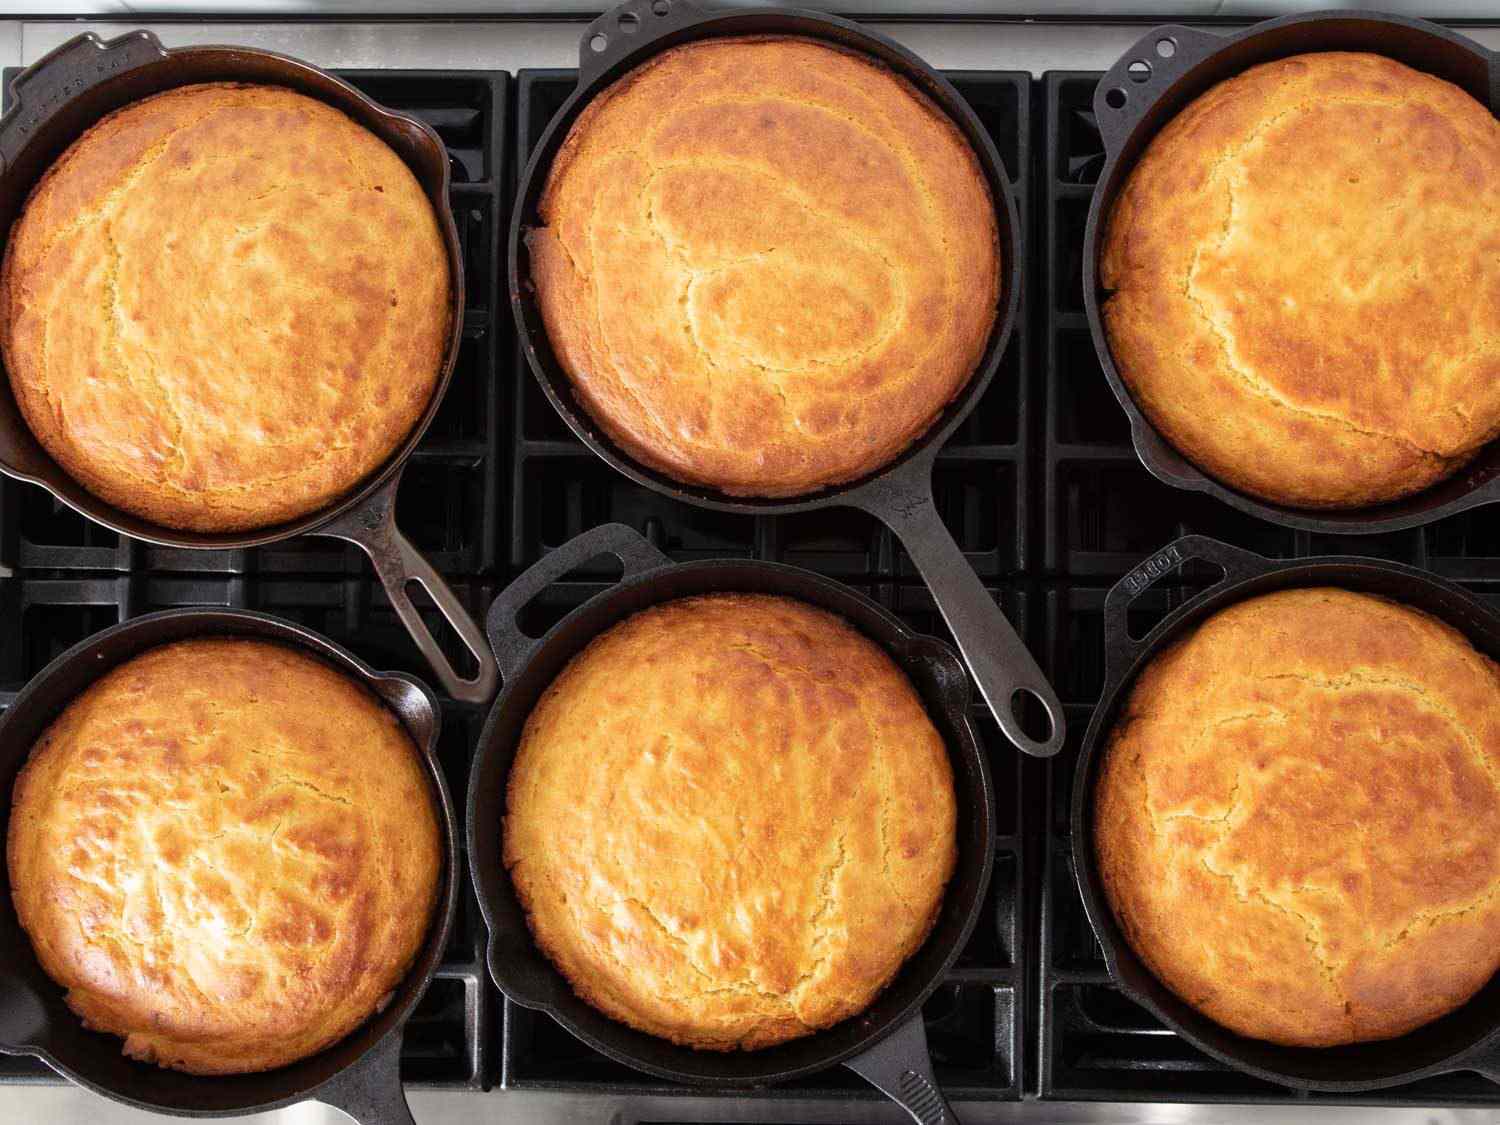 头顶上的镜头是几只铸铁煎锅，每个煎锅里都盛着金黄色的玉米面包;煎锅与煎锅之间的差别是无法分辨的。